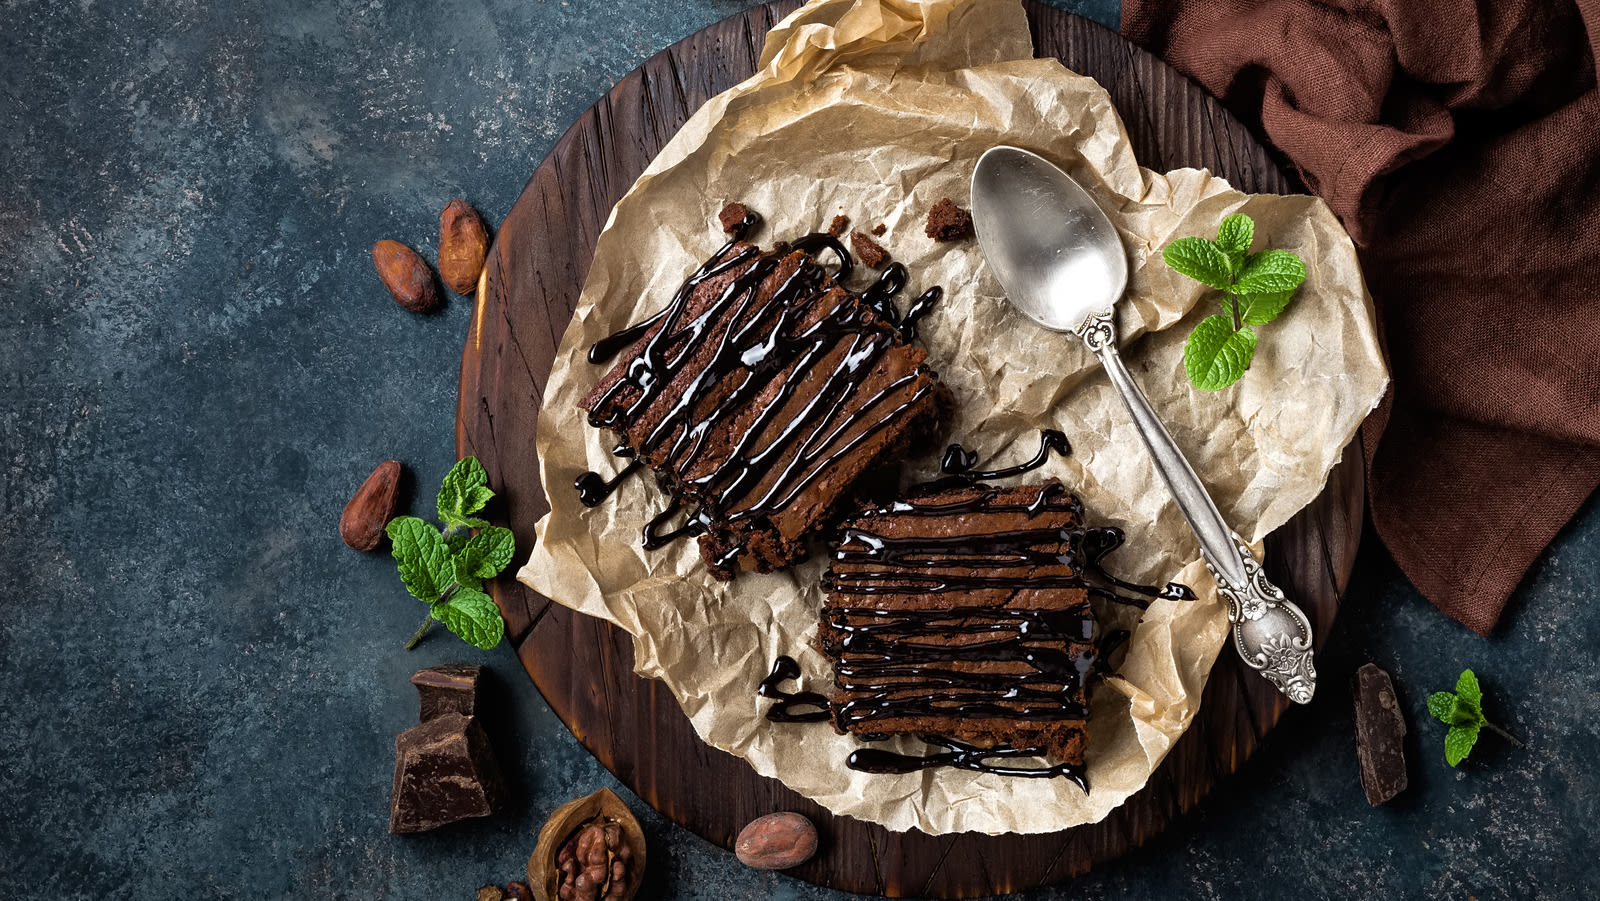 14 Chain Restaurant Brownie Desserts Ranked Worst To Best